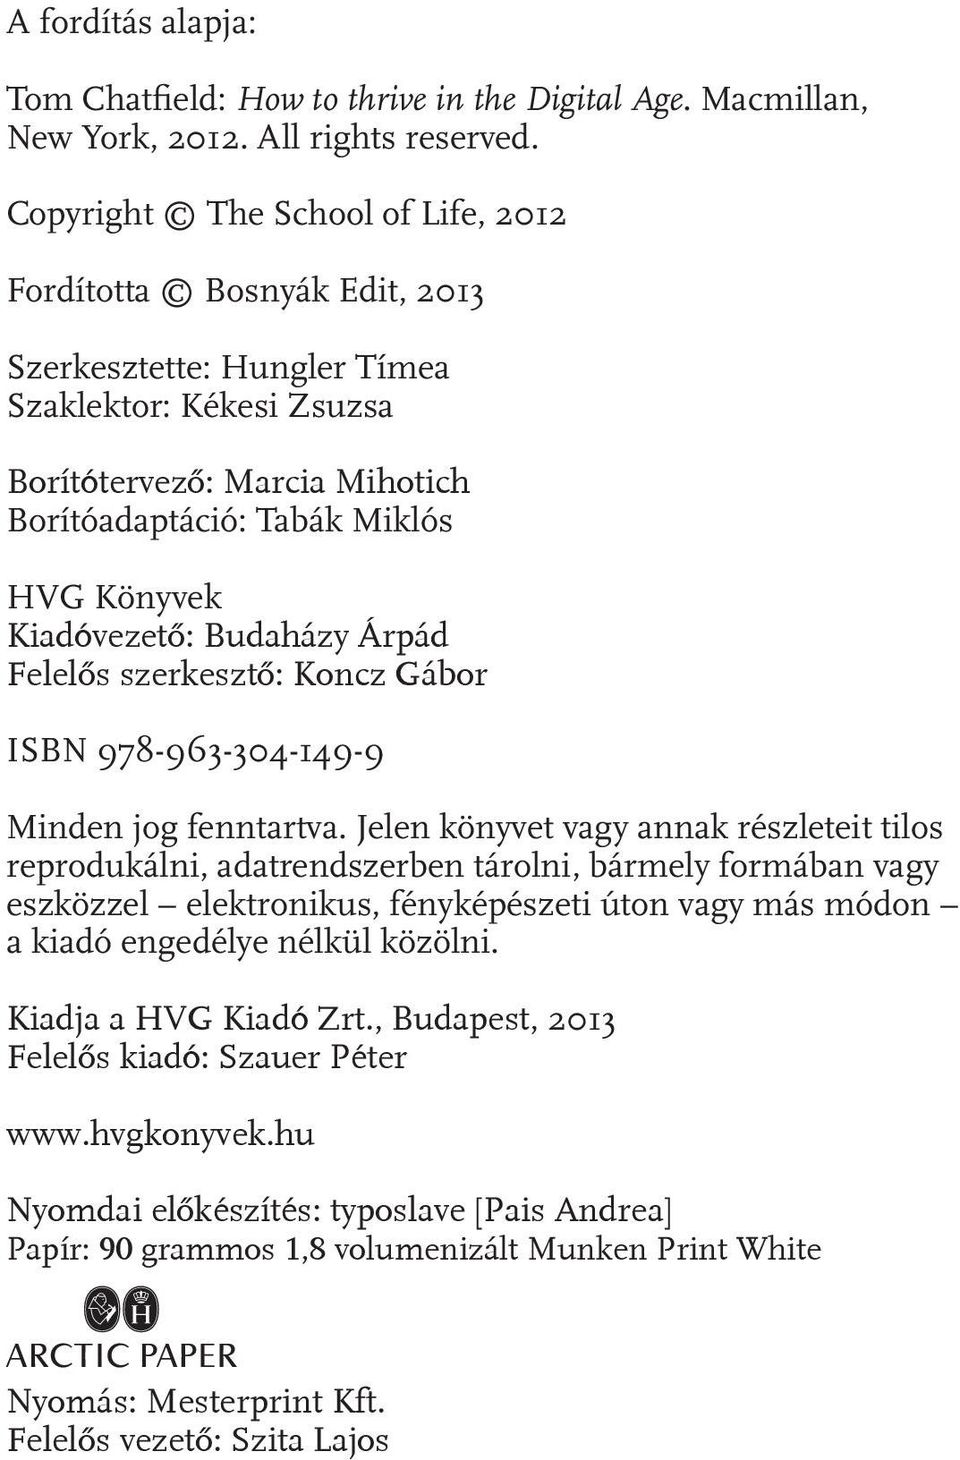 Kiadóvezető: Budaházy Árpád Felelős szerkesztő: Koncz Gábor ISBN 978-963-304-149-9 Minden jog fenntartva.